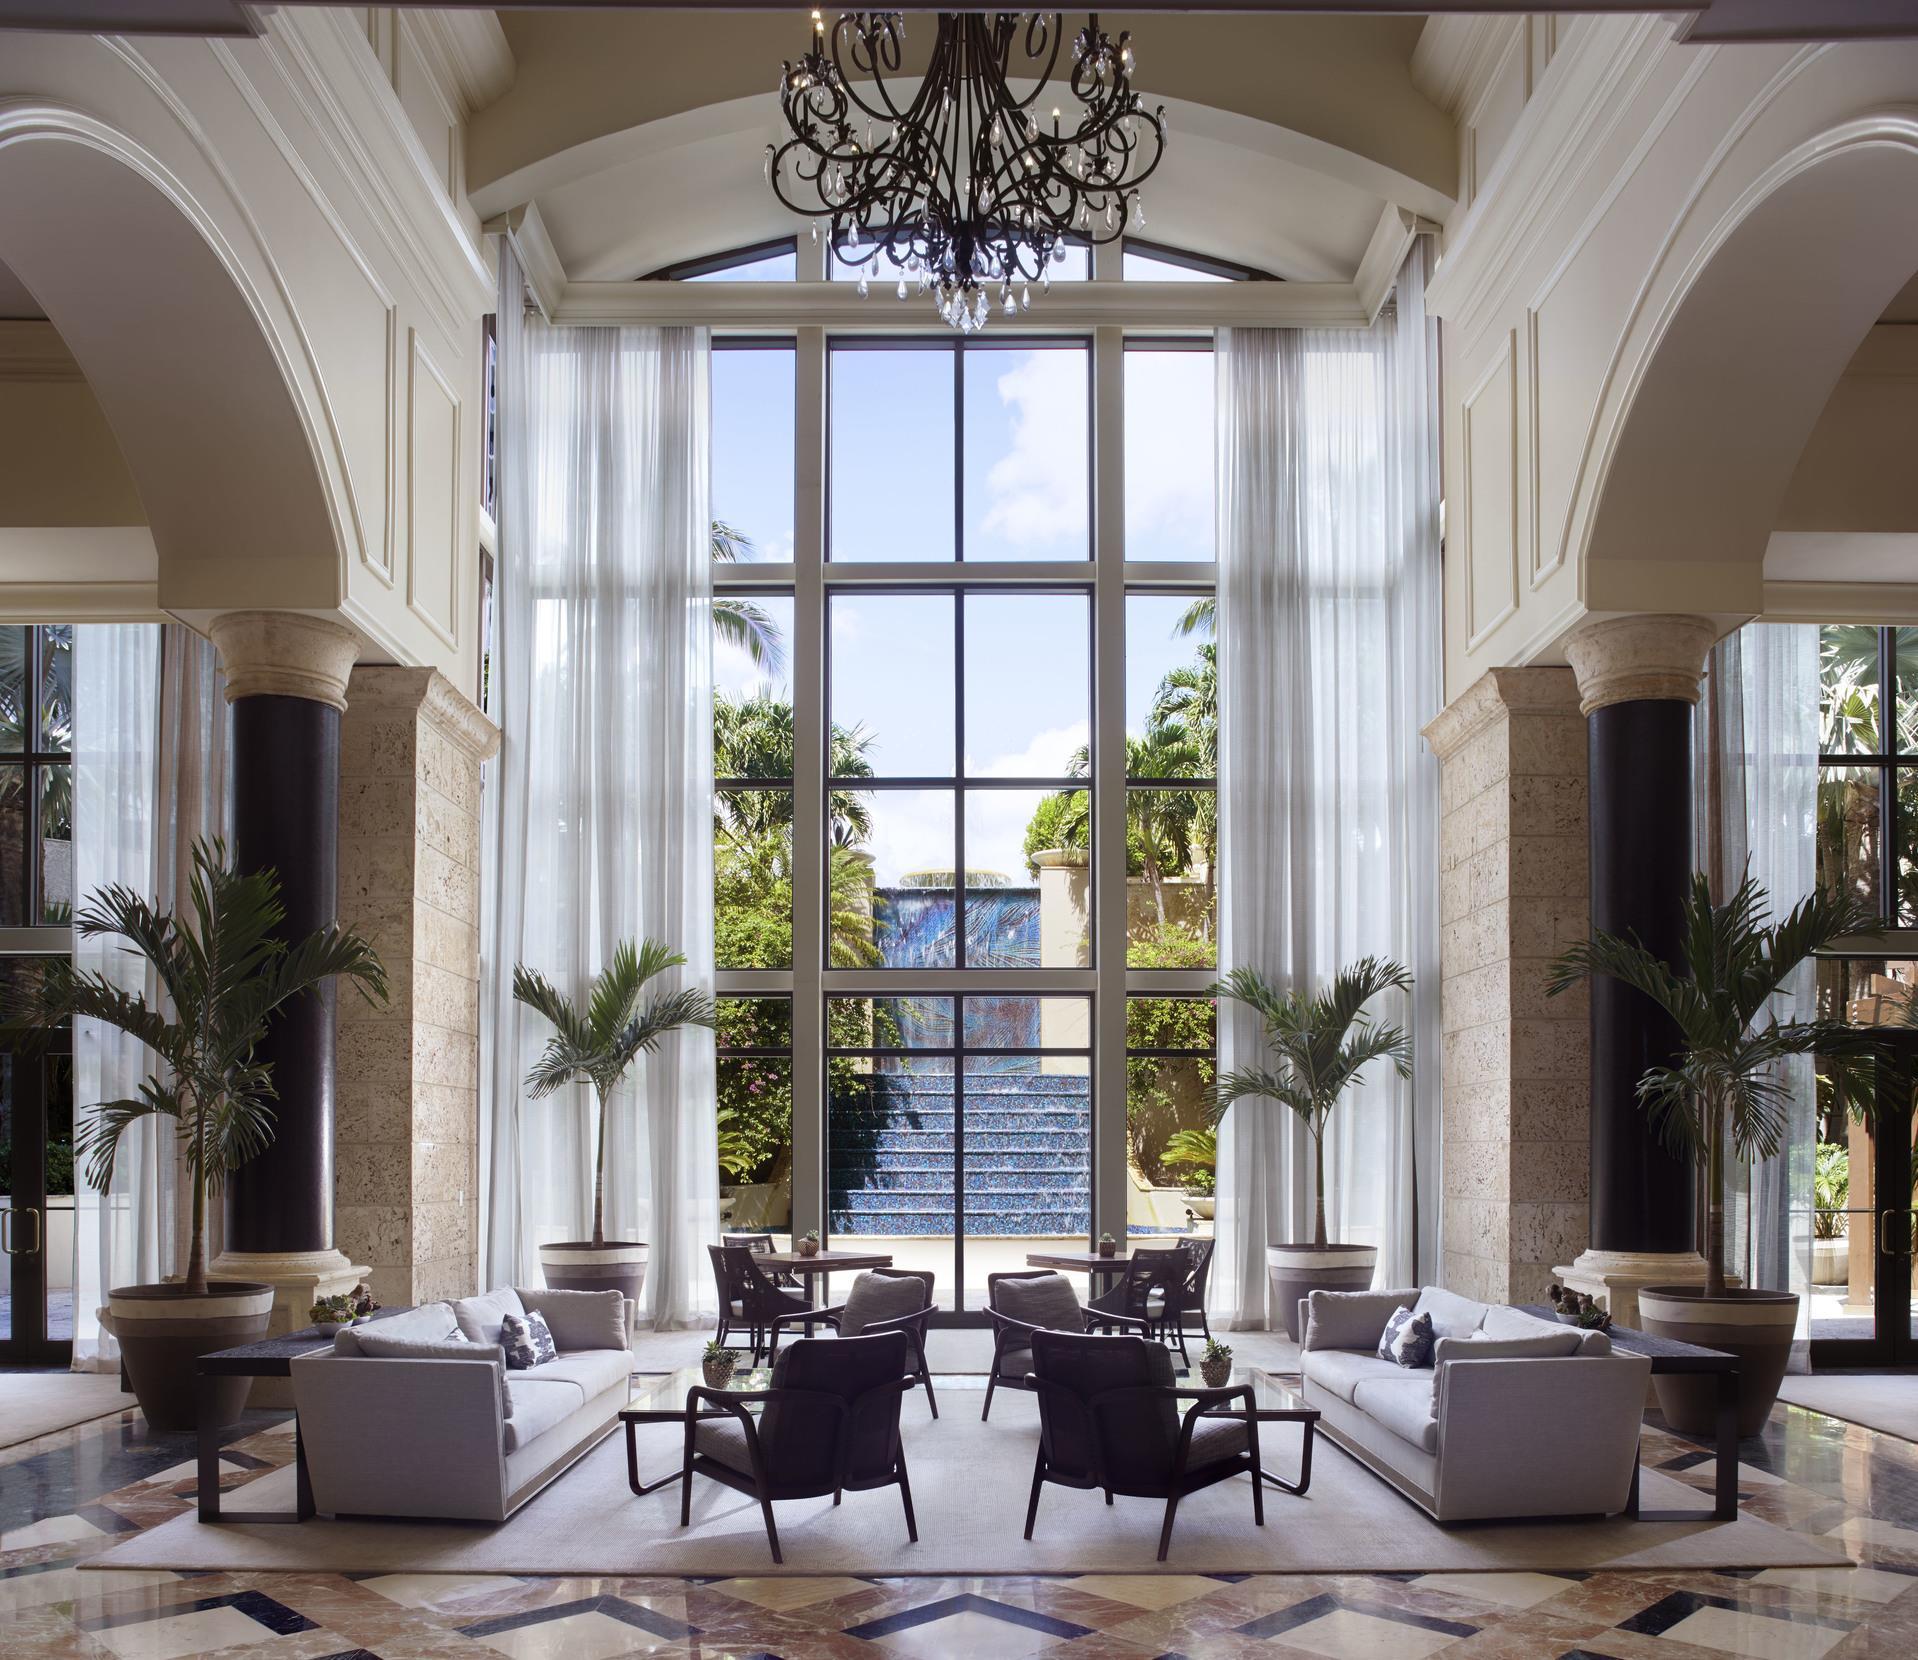 The Ritz-Carlton Coconut Grove, Miami in Miami, FL